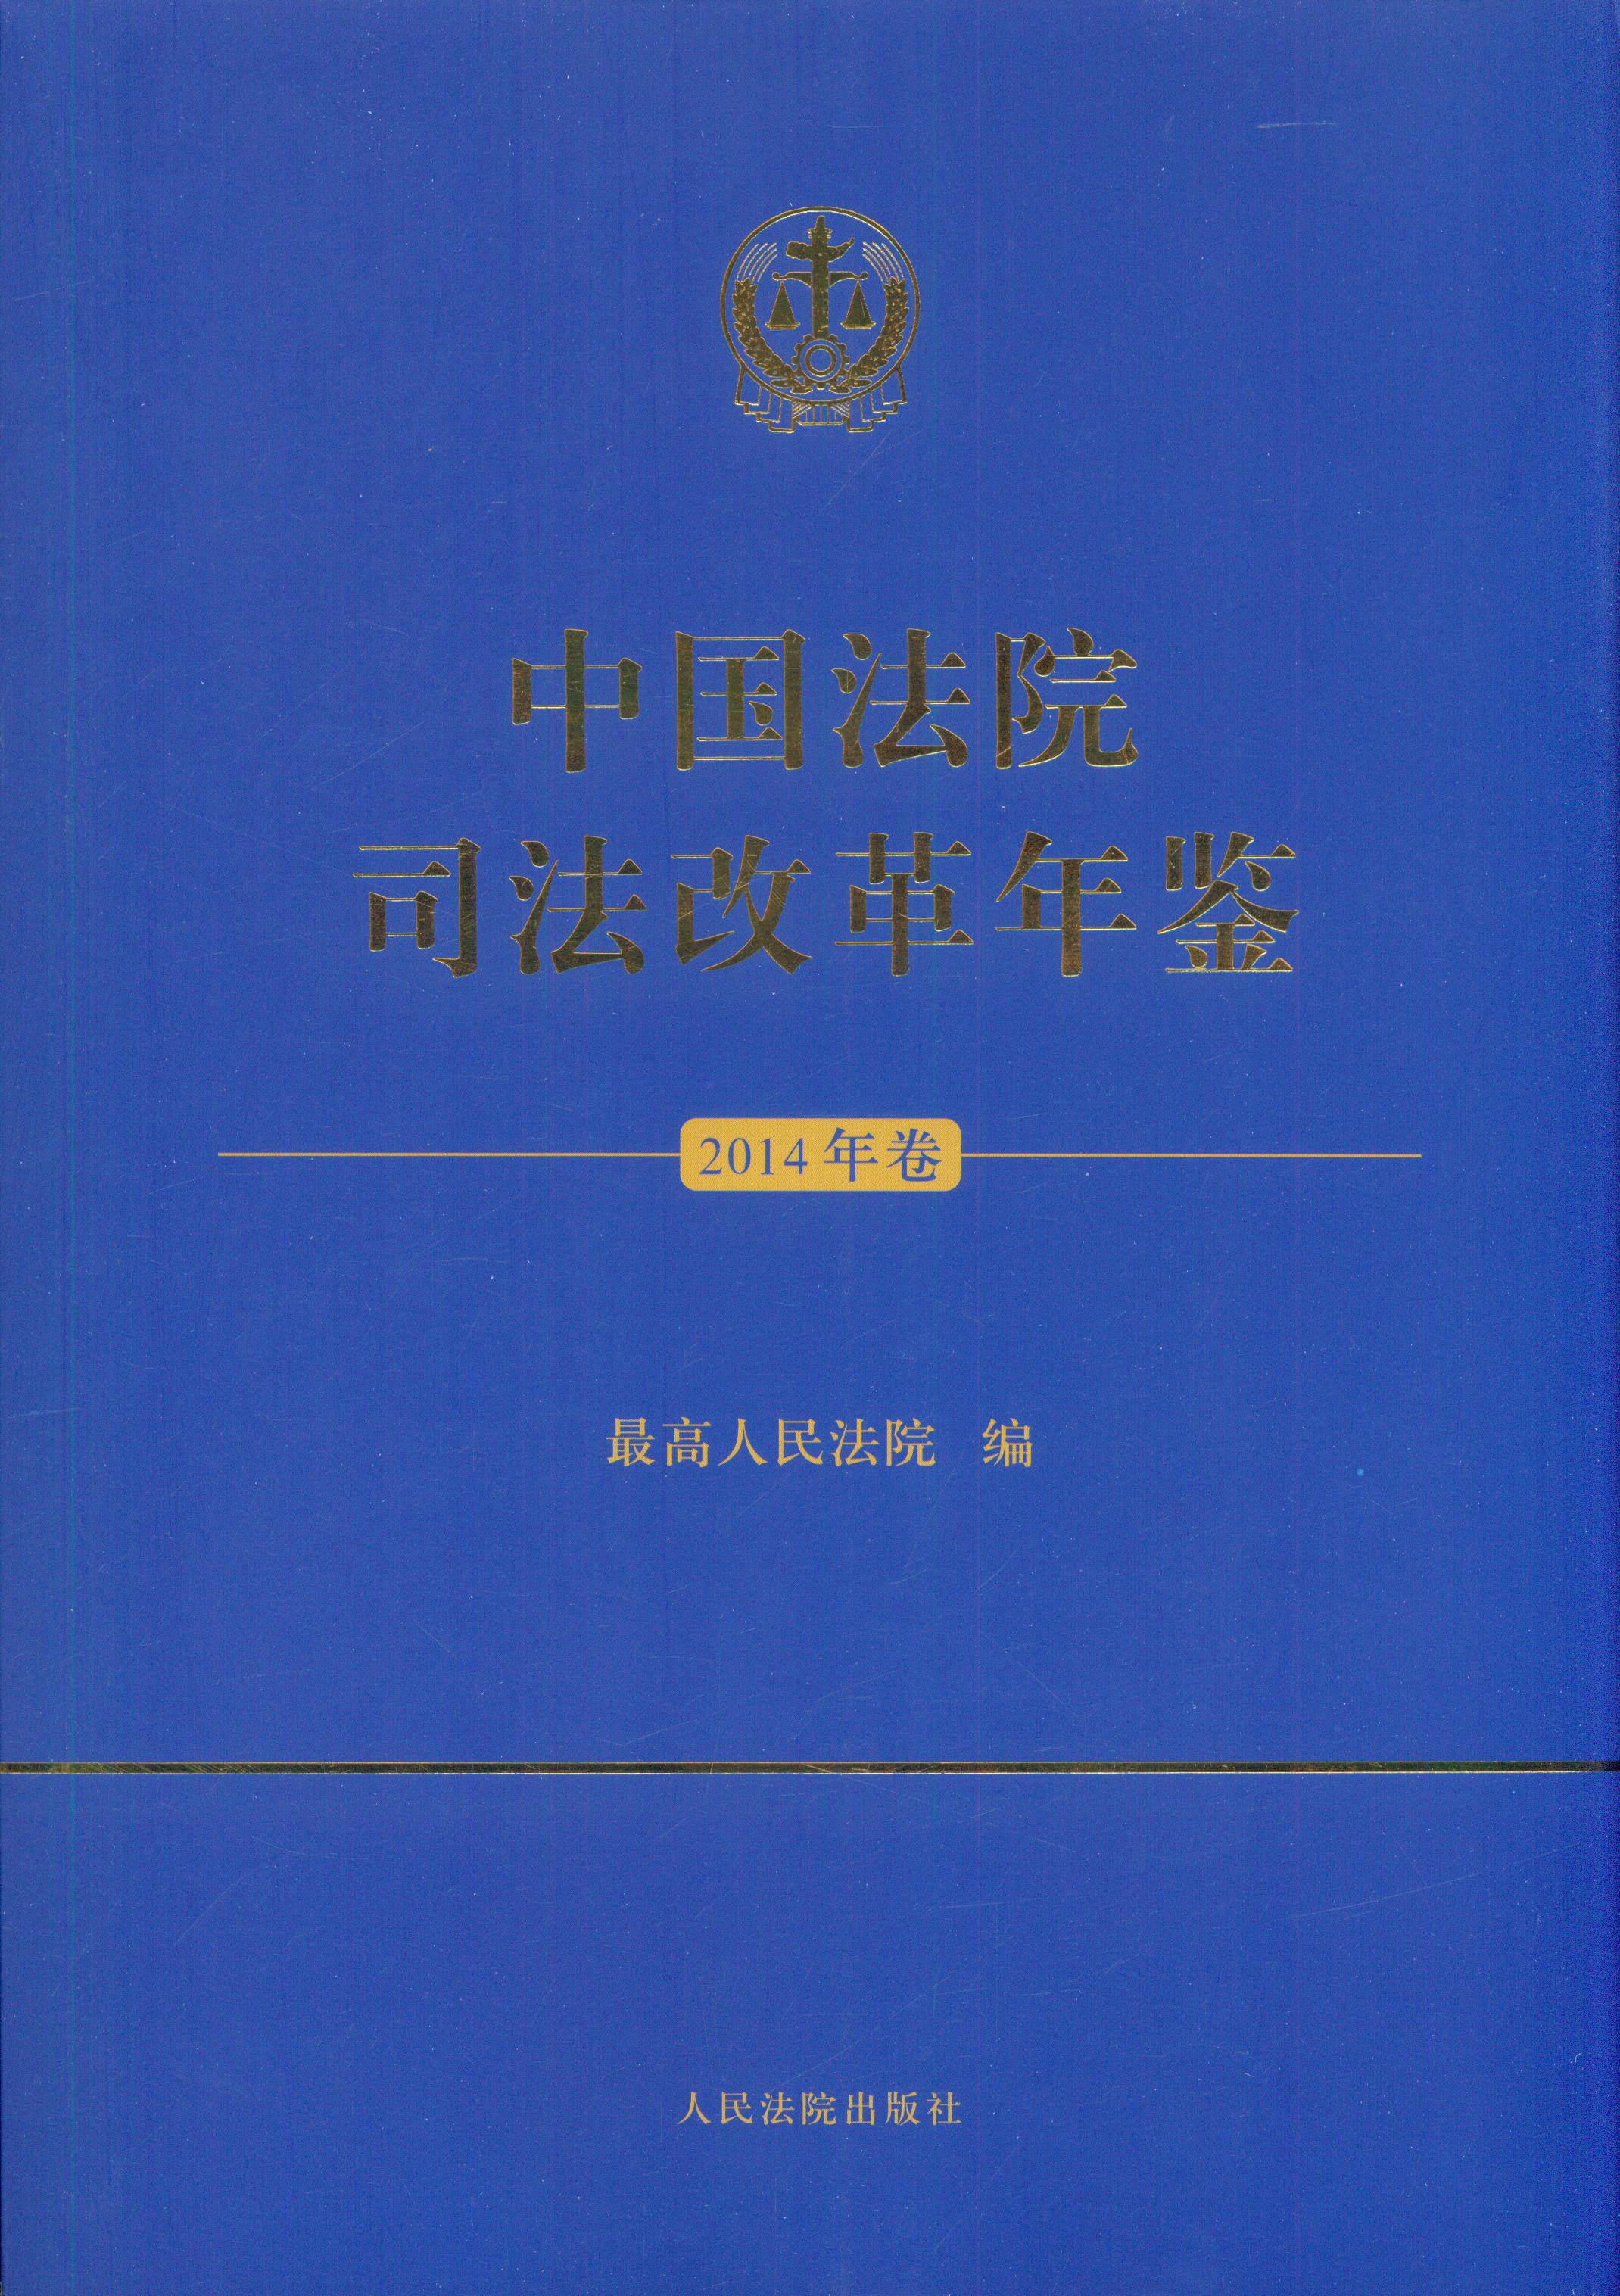 中国法院司法改革年鉴(2014年卷)